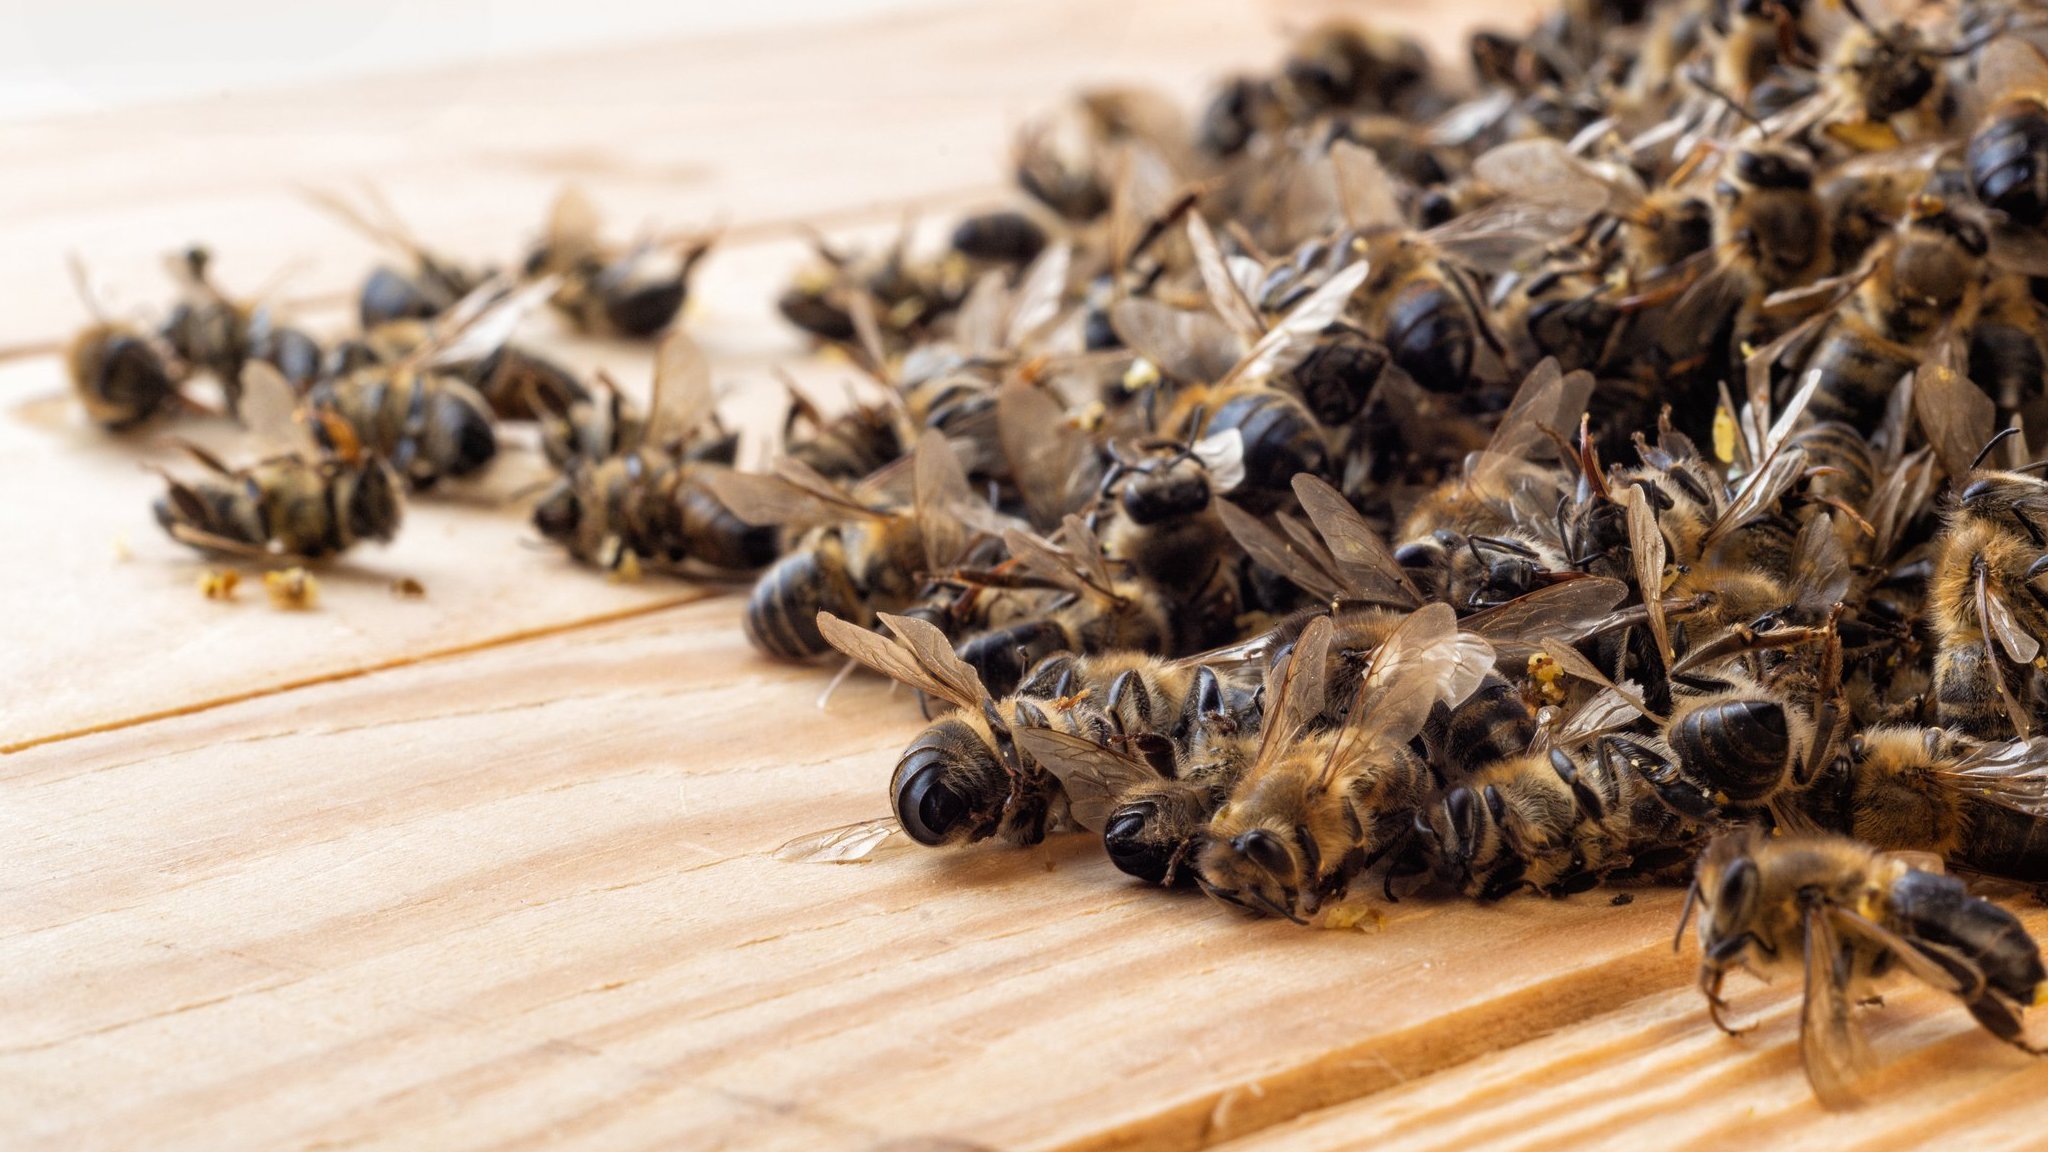 O que é apicultura? Entenda o significado e importância dessa